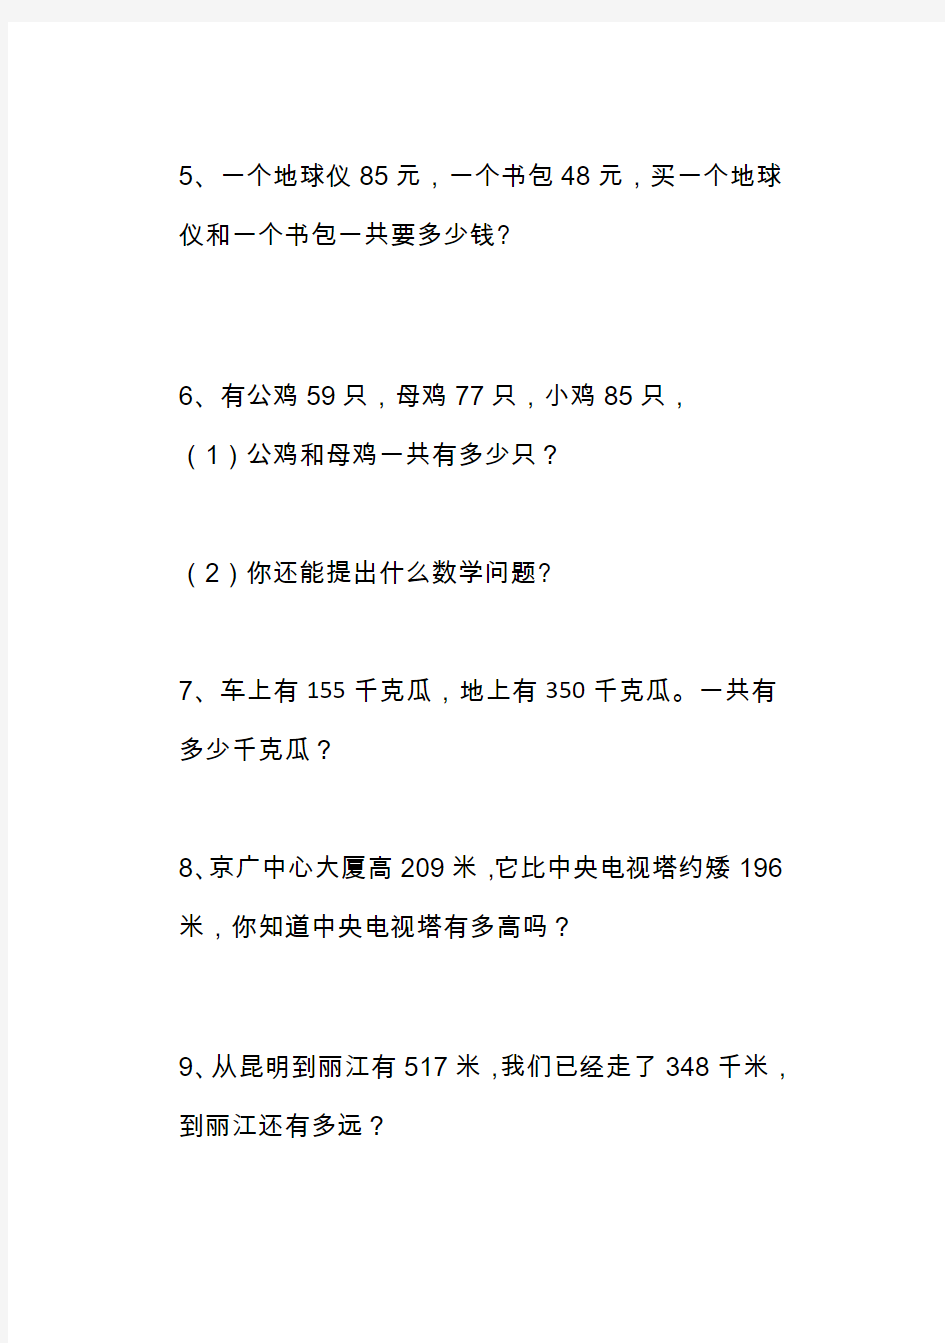 【北京市】人教版小学数学三年级上册应用题大全